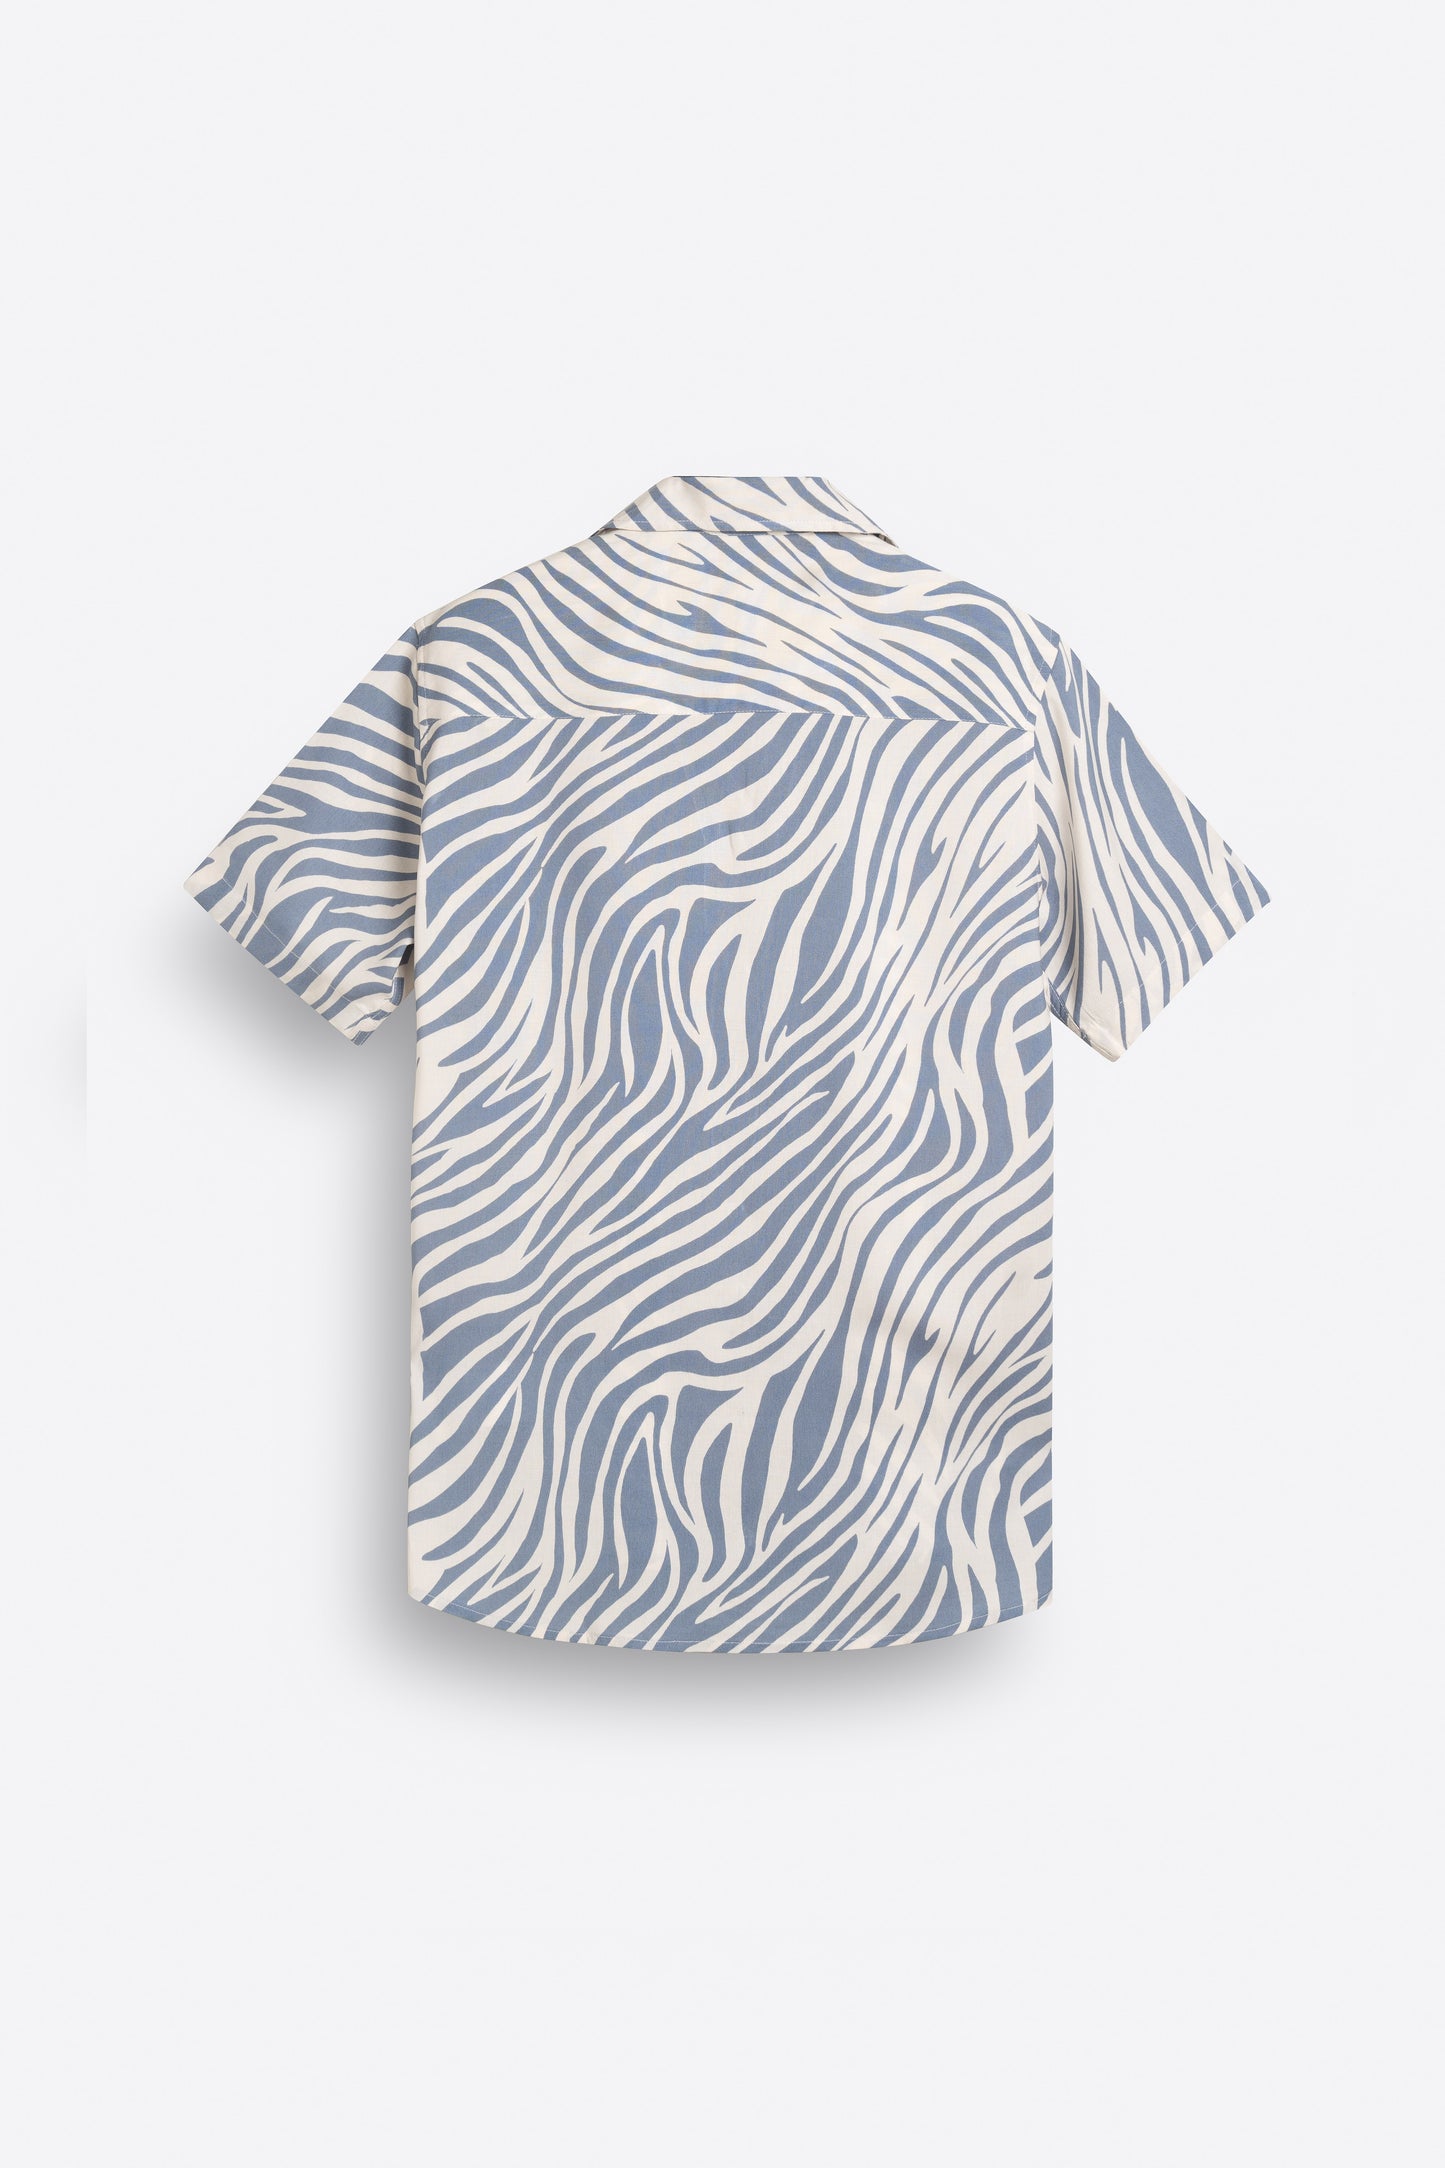 Abstract Print Shirt